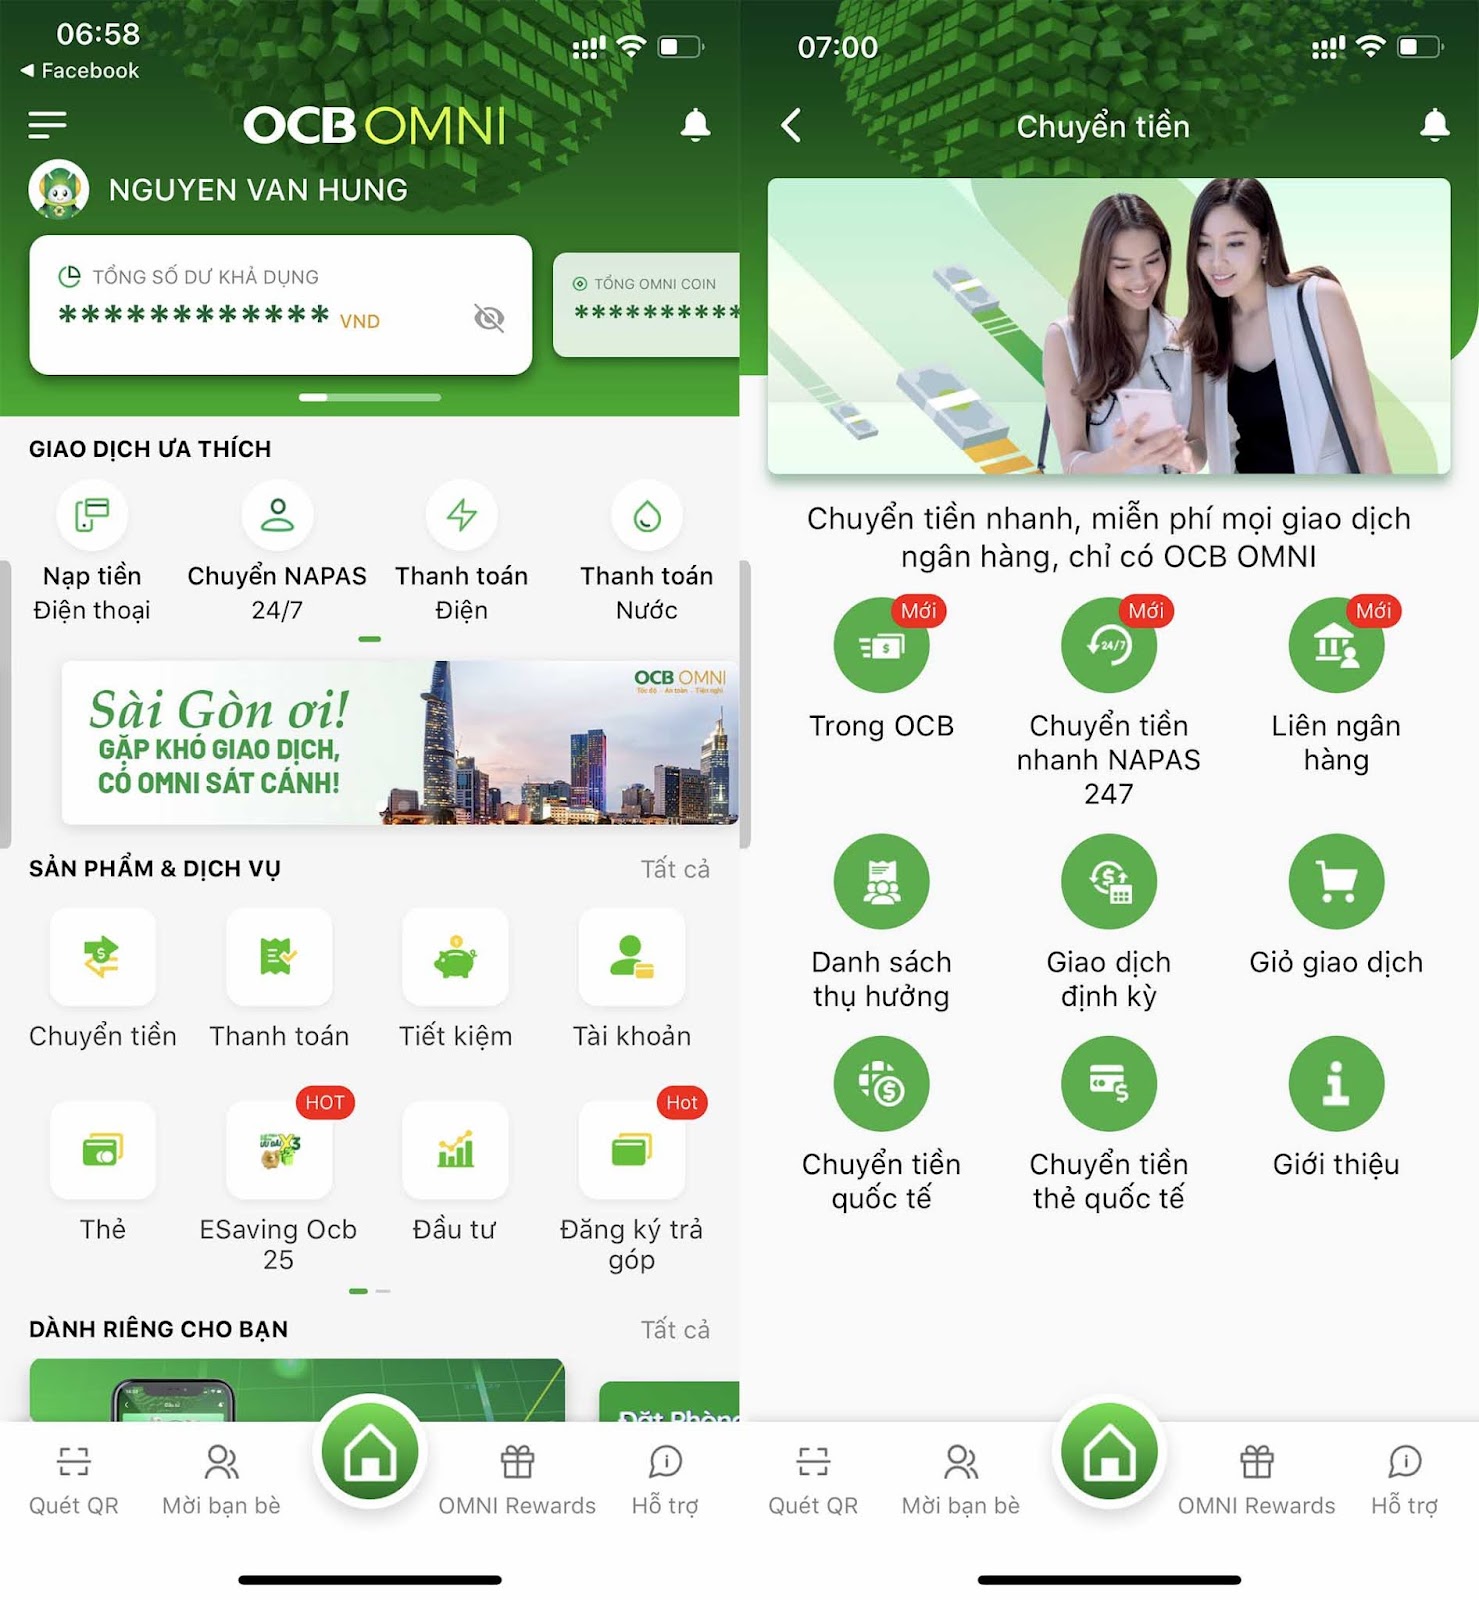 Hướng dẫn cách nhập mã giới thiệu OCB OMNI nhận ngay 30K